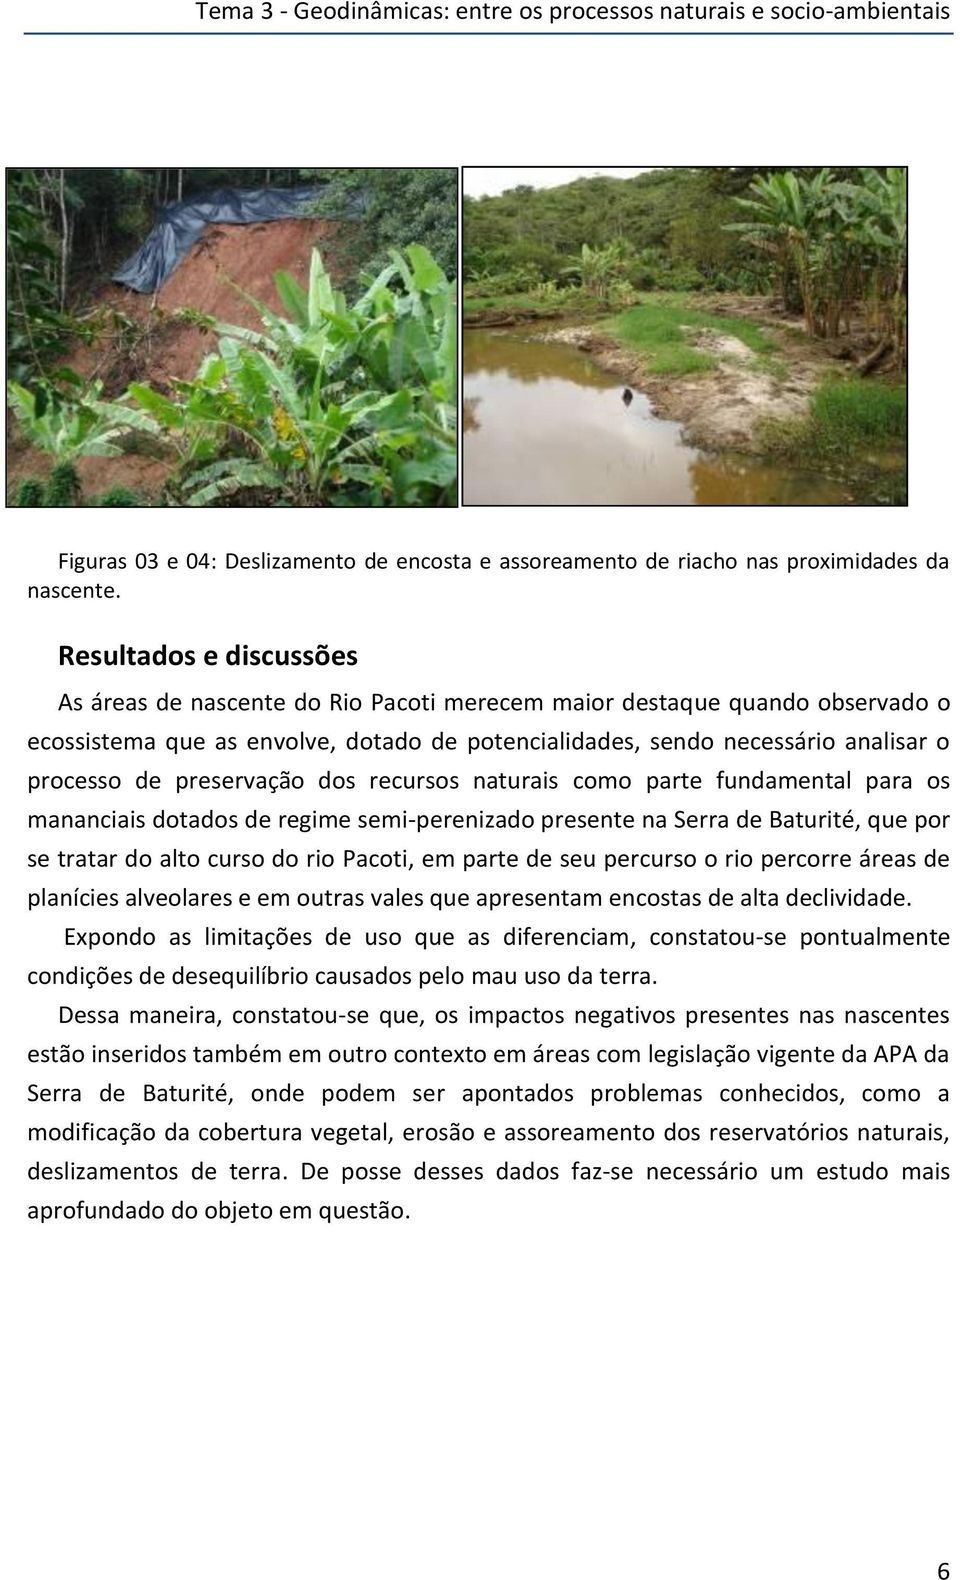 preservação dos recursos naturais como parte fundamental para os mananciais dotados de regime semi-perenizado presente na Serra de Baturité, que por se tratar do alto curso do rio Pacoti, em parte de